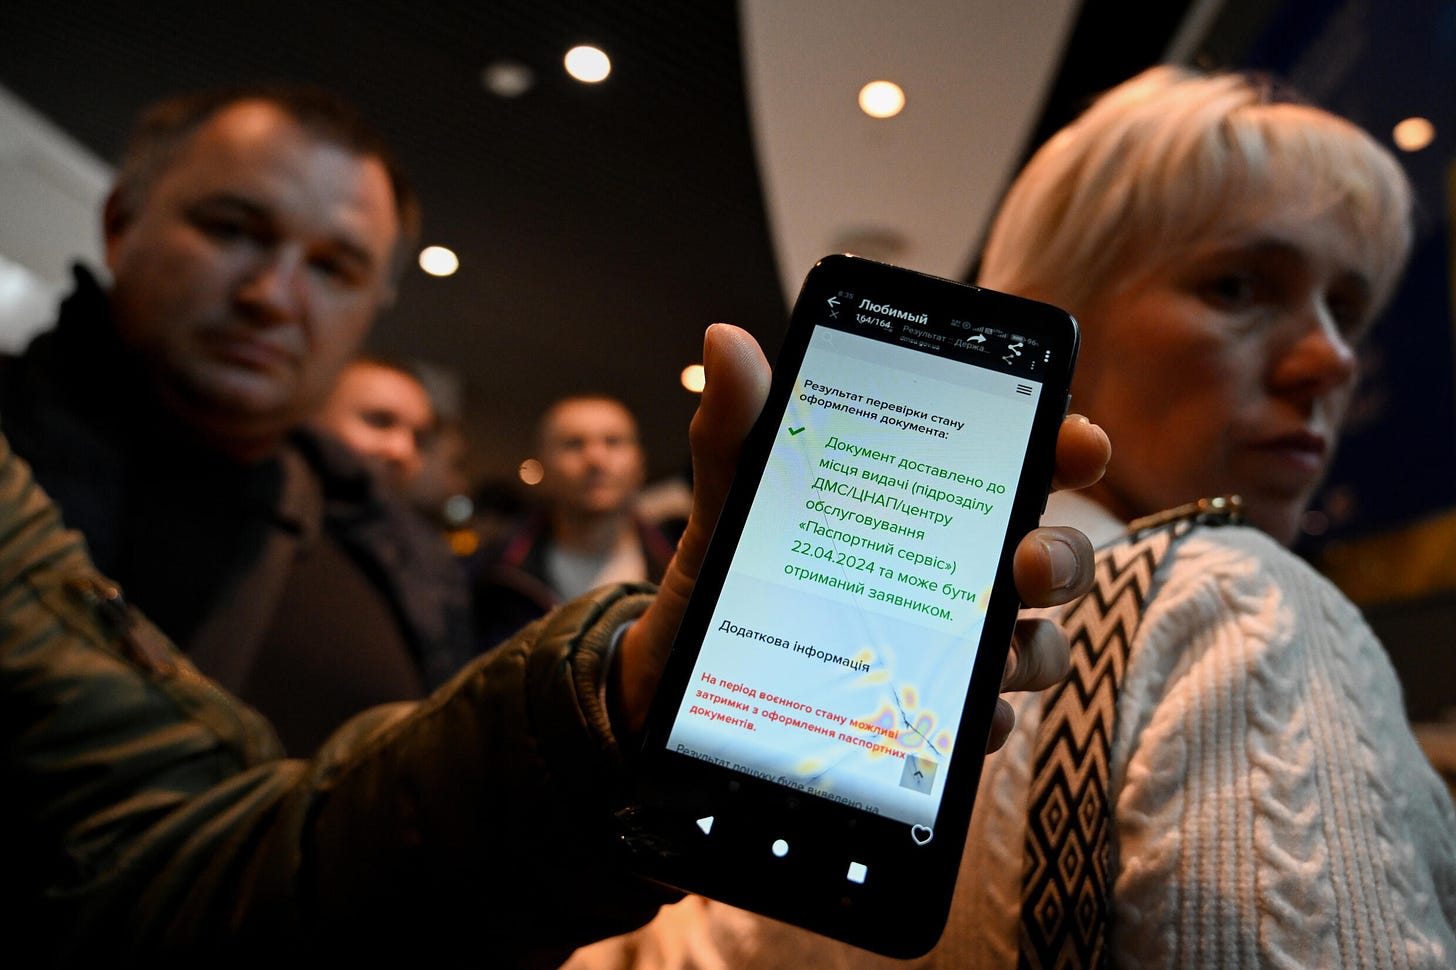 Az ukránok azt mondták, hogy üzenetet kaptak, hogy útlevelük készen áll, de nem engedték be őket a varsói irodába